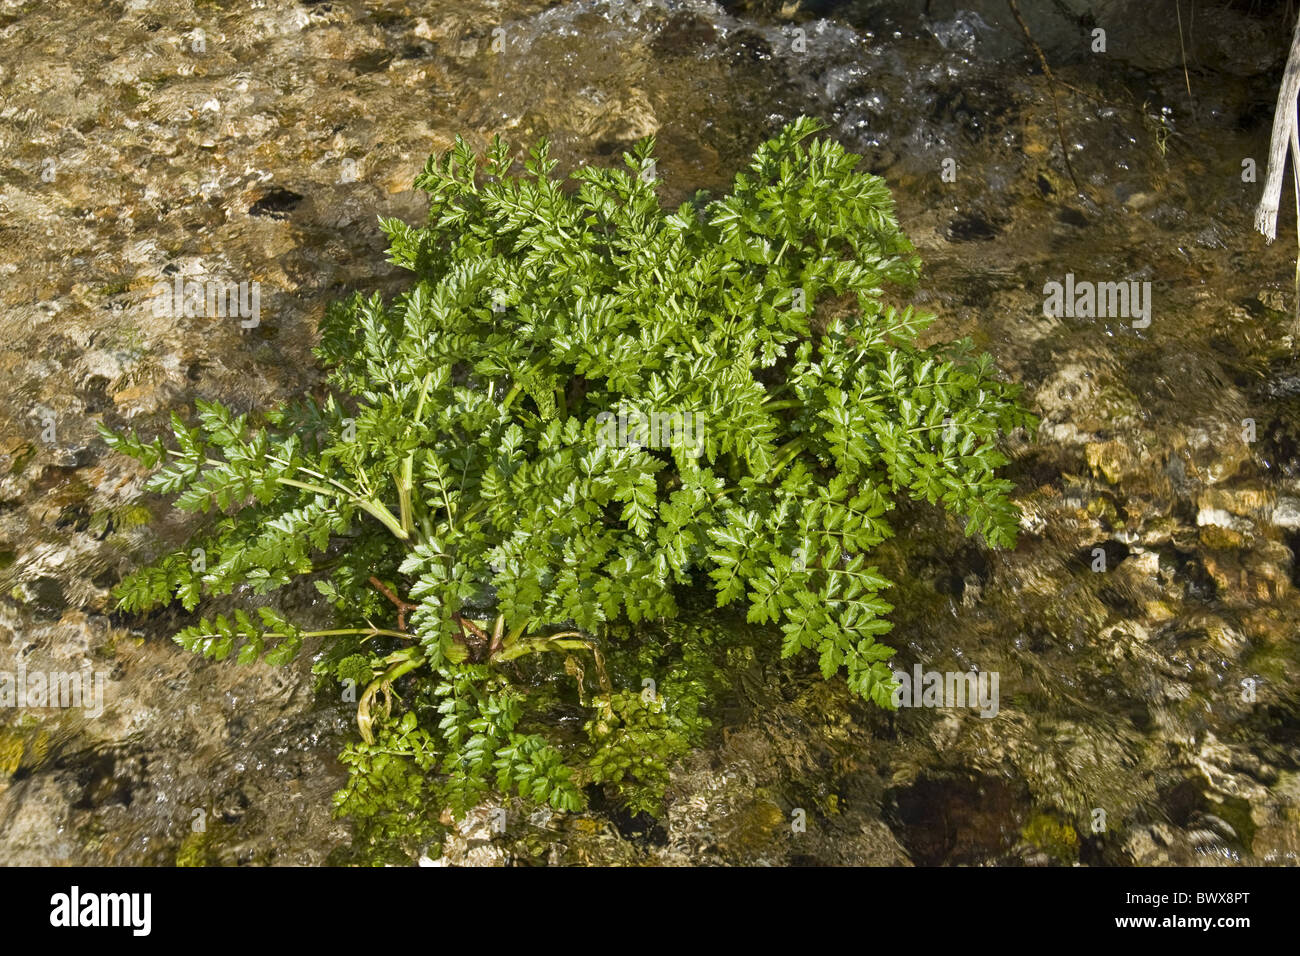 La gran bretagna british england inglese europa impianto europeo di piante velenose cicuta acqua umbelliferae acqua dropwort fiore del Regno Unito Foto Stock